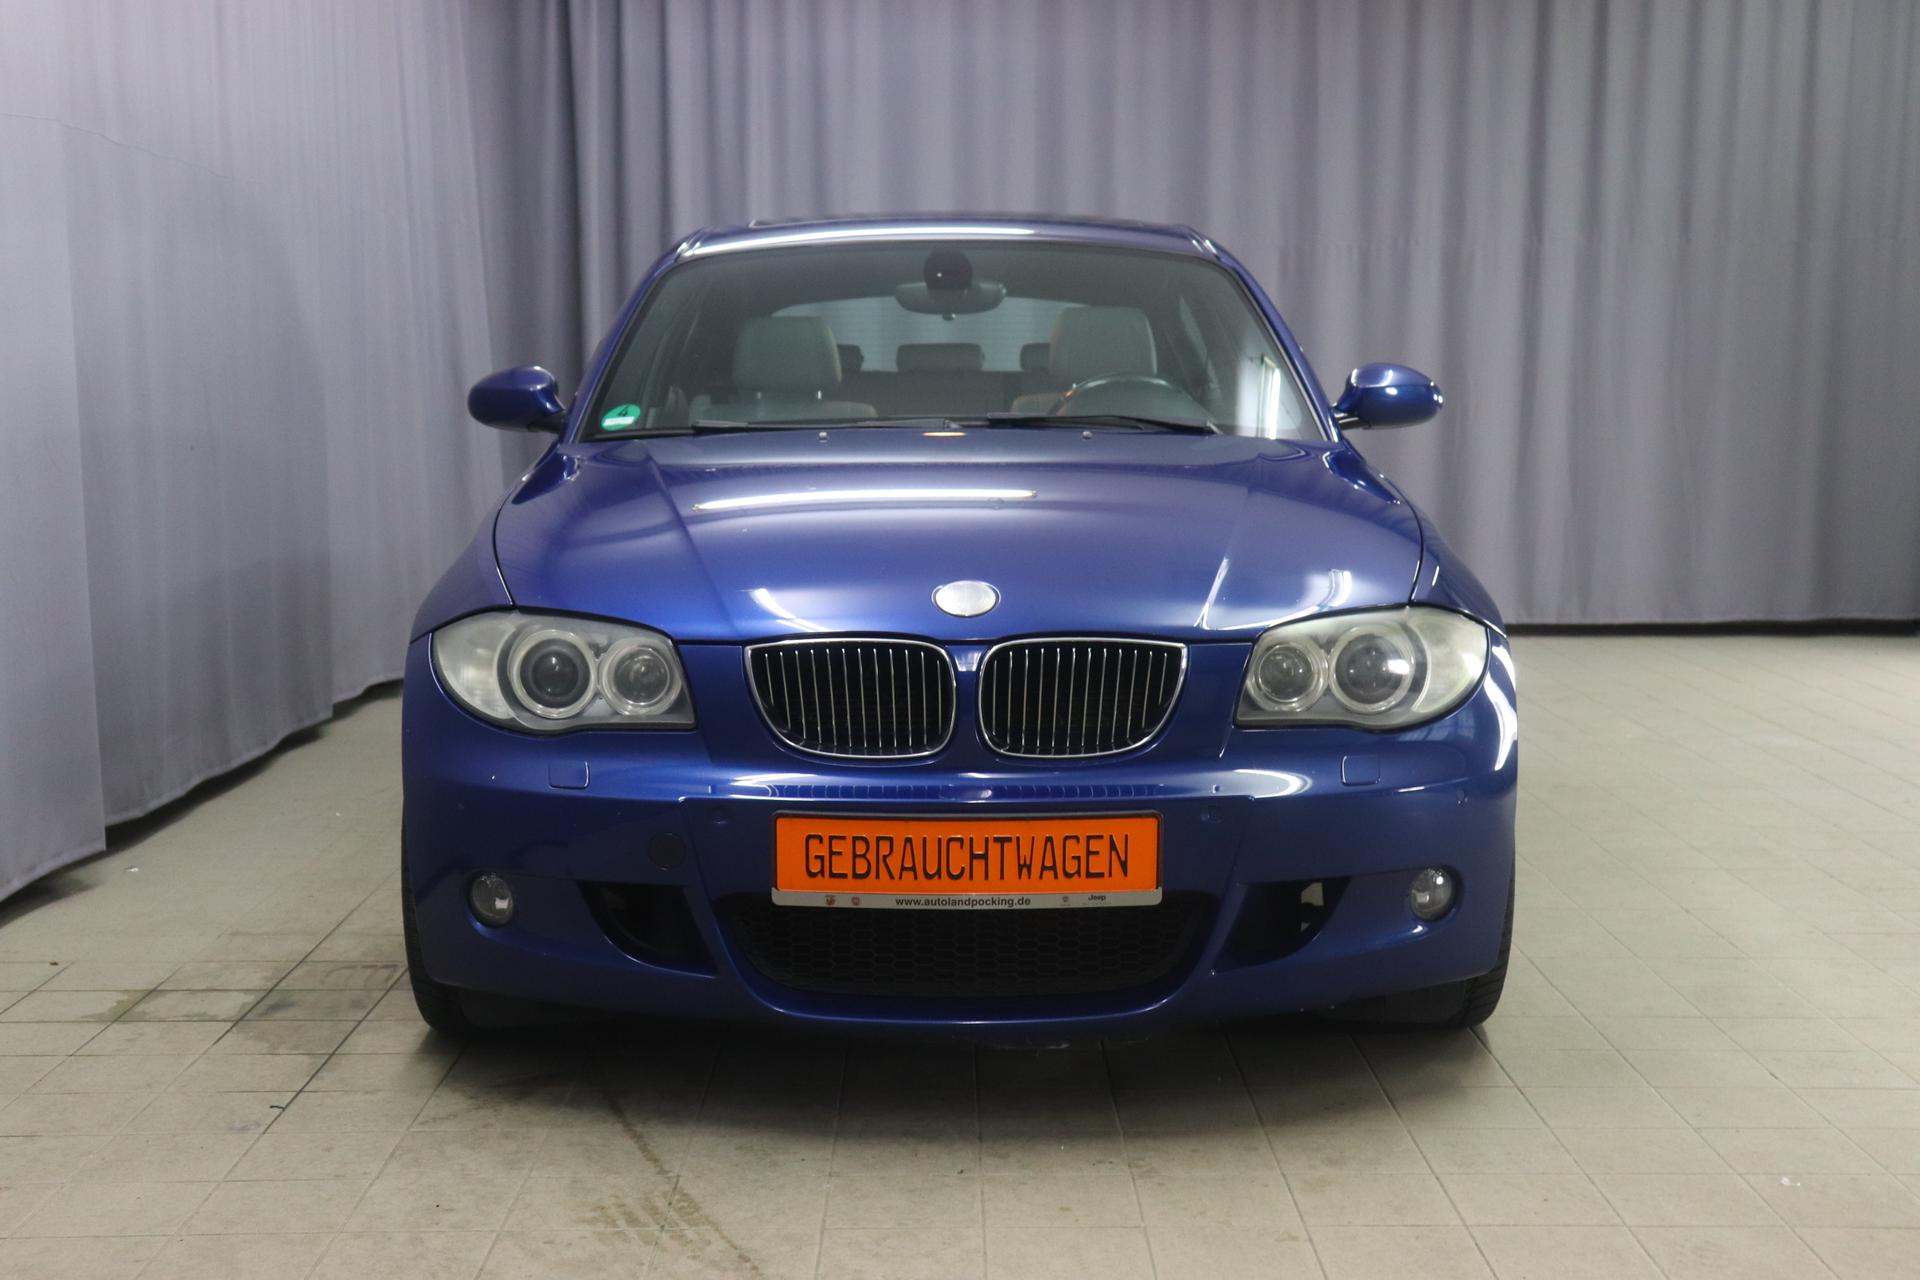 BMW 1er 130i 3.0 195kW 6-Zylinder, Panoramadach, Klimaautomatik